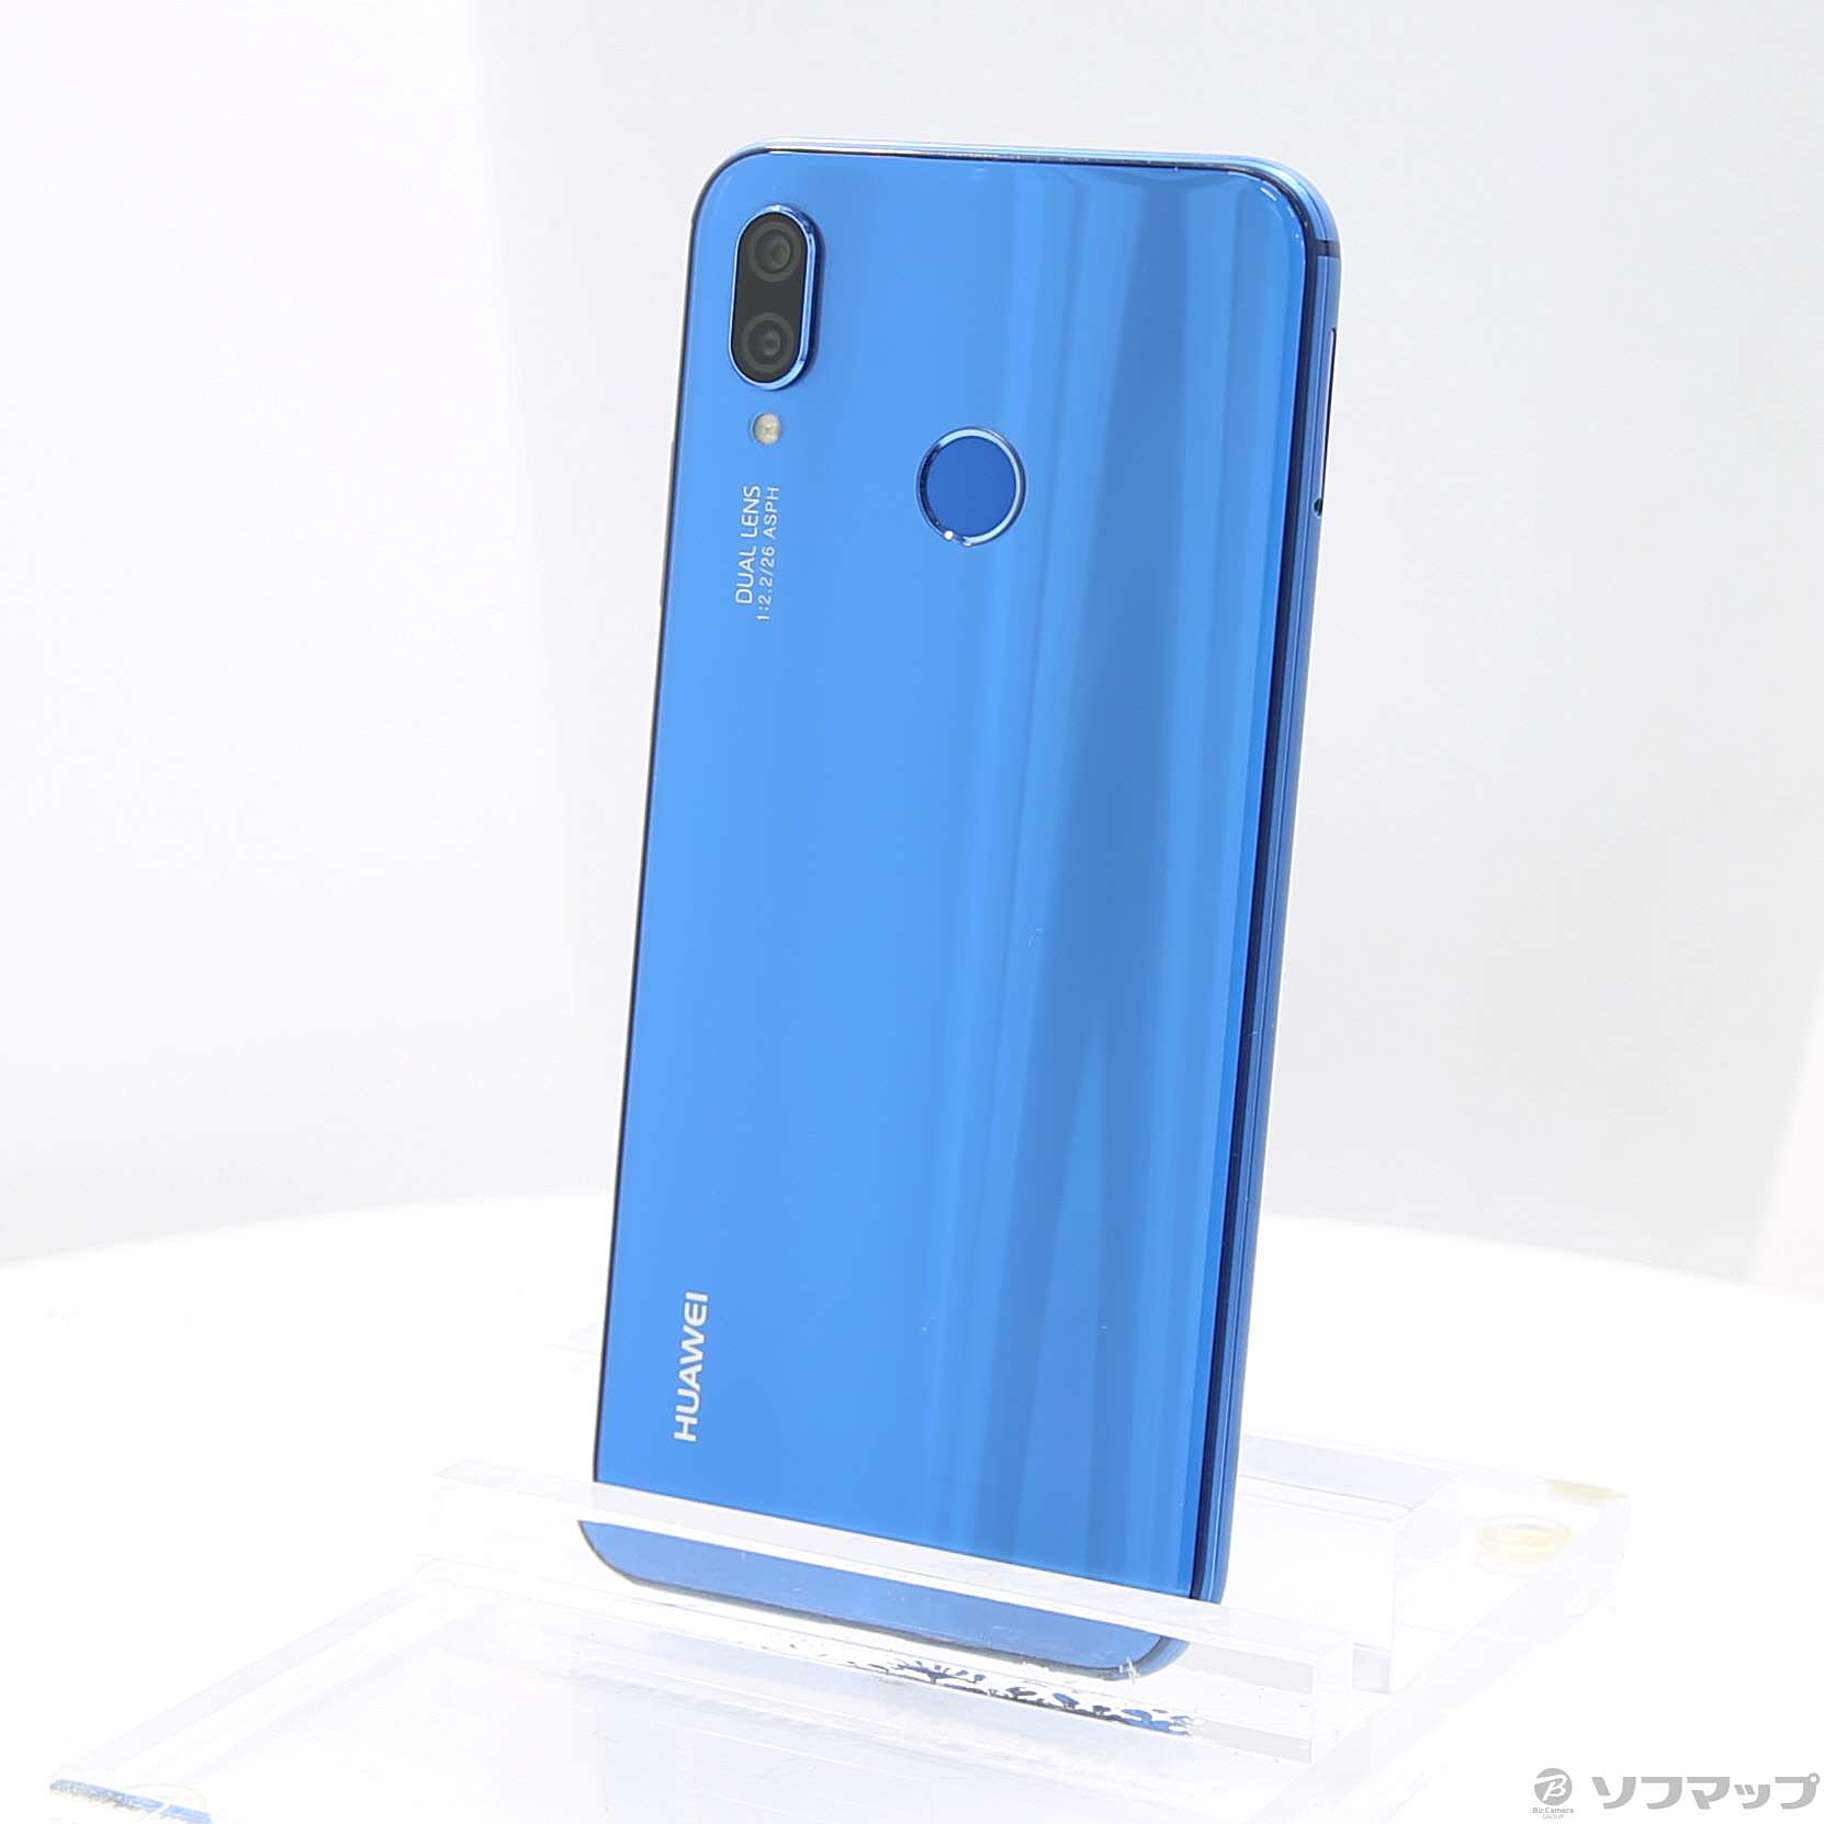 Huawei P20 lite 32GB Blue 《新品》simフリー